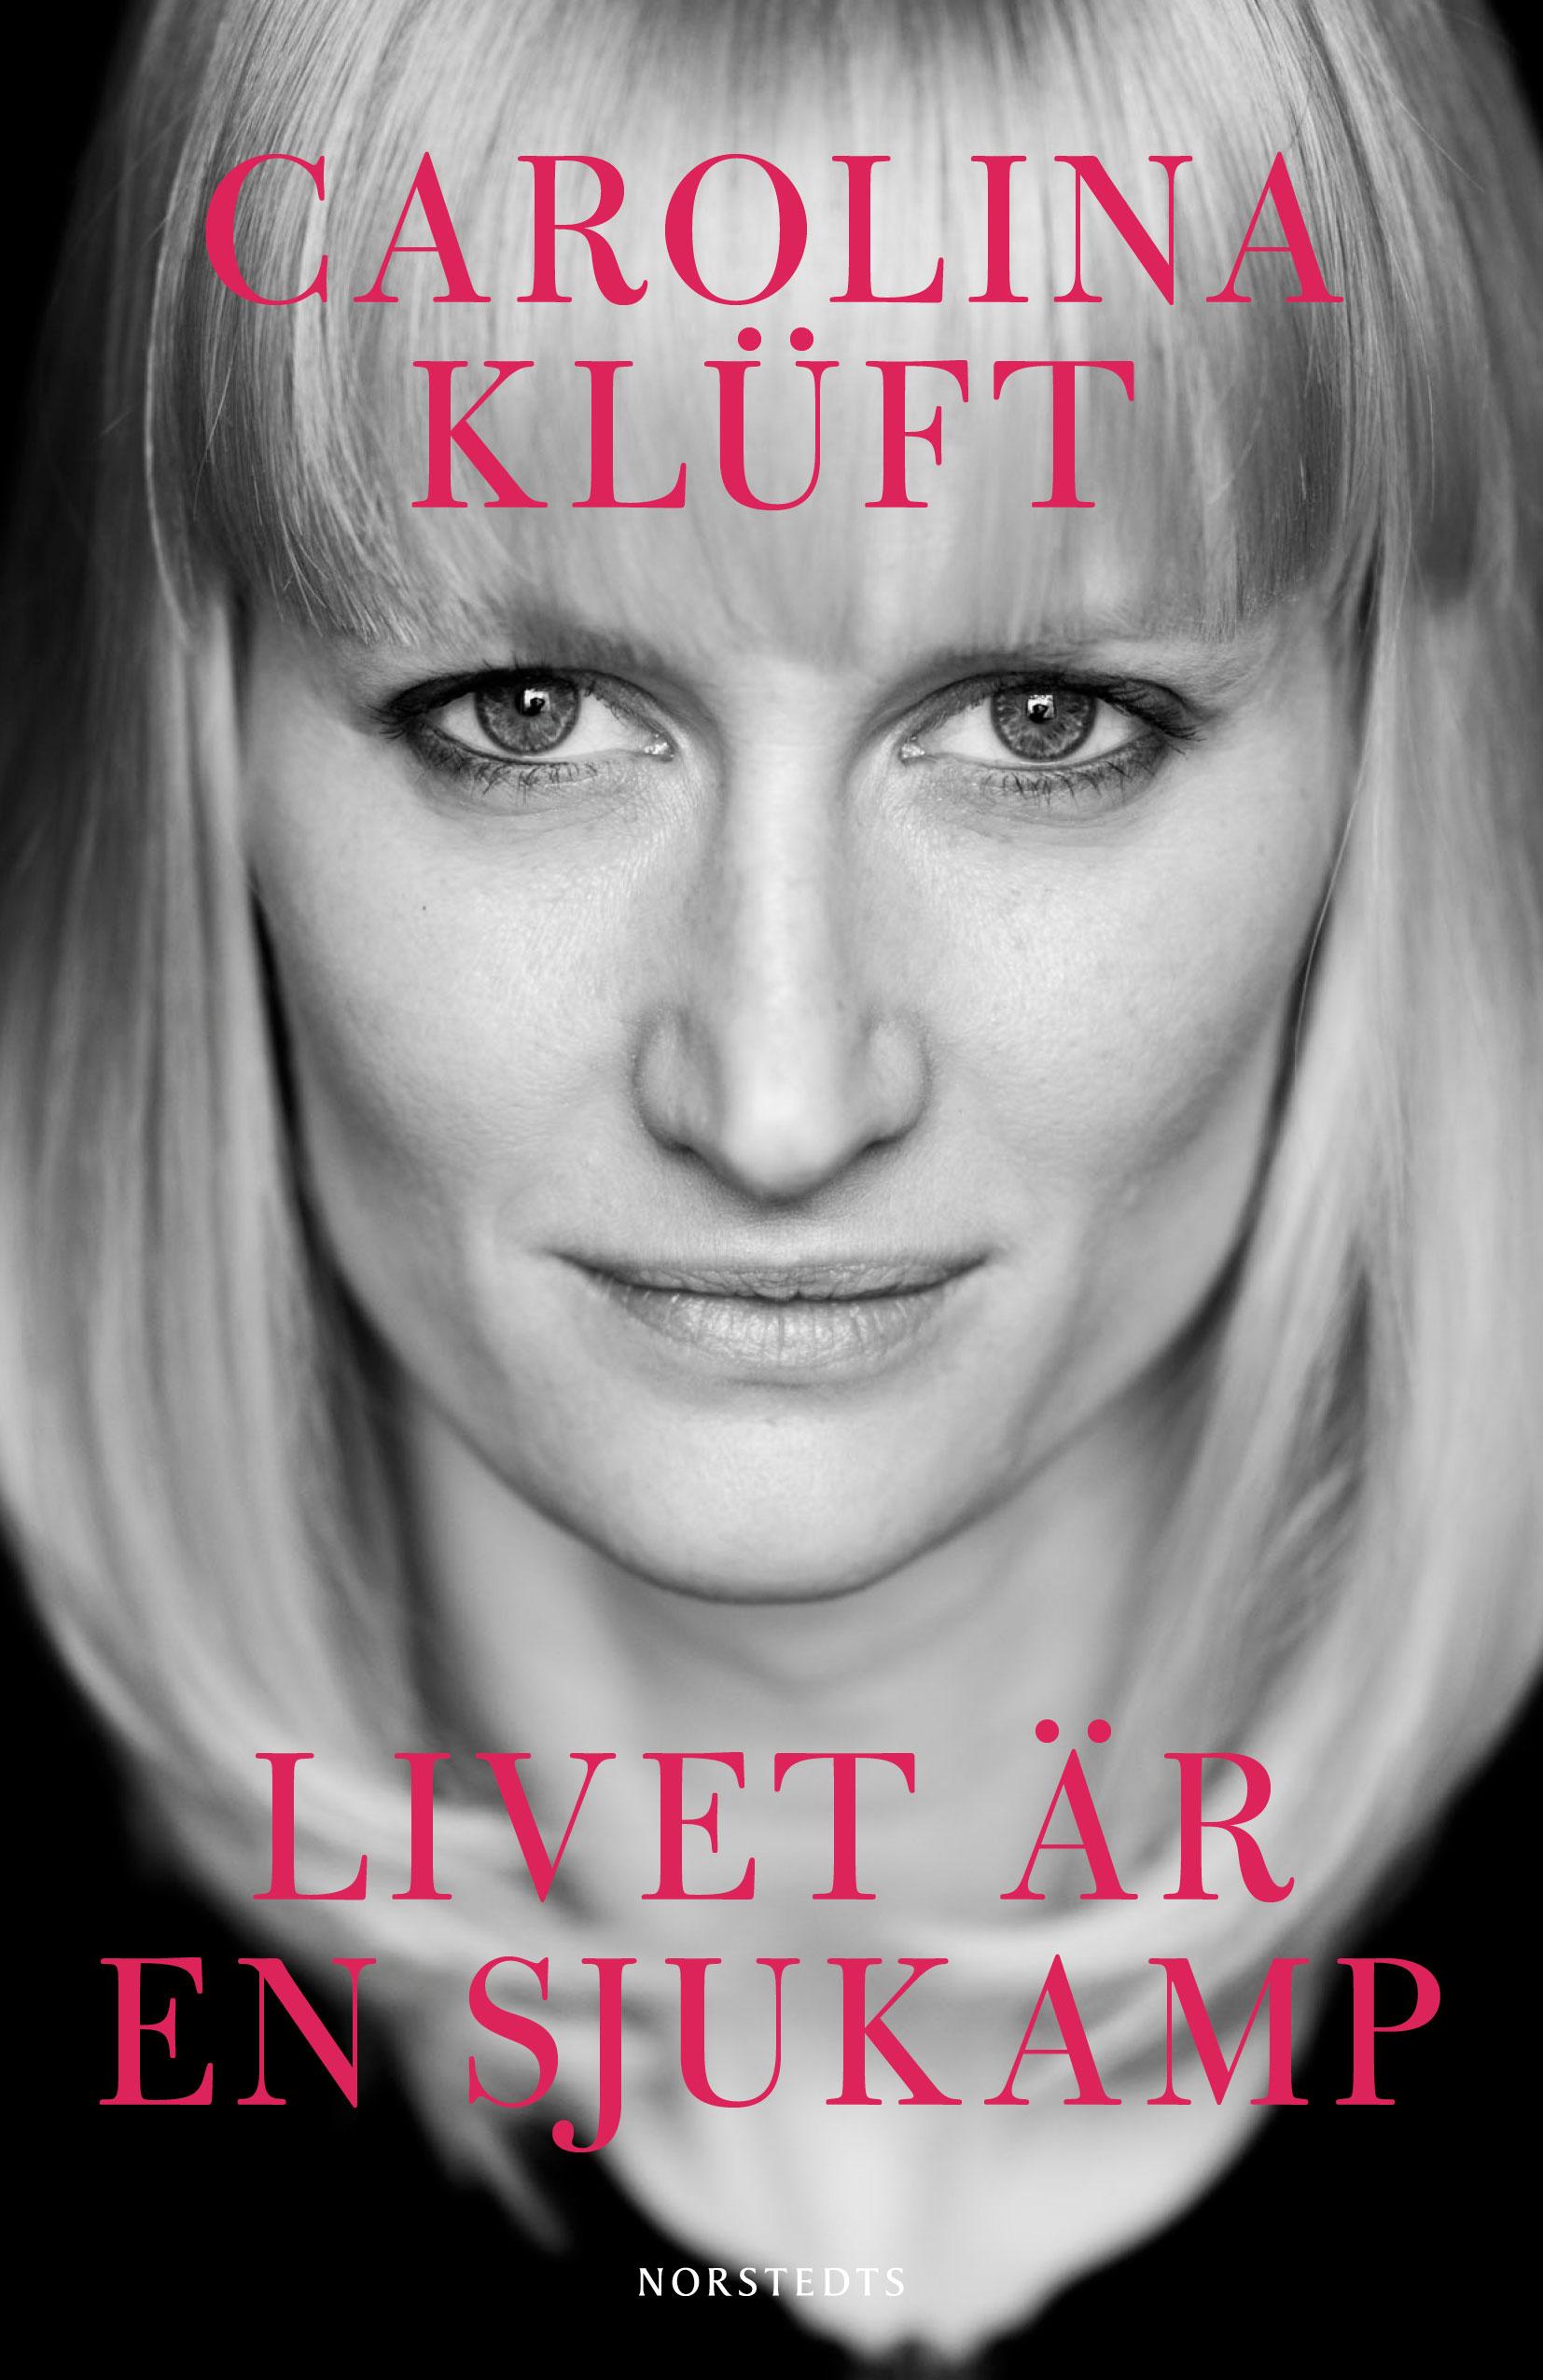 Carolina Klüfts nya bok ”Livet är en sjukamp”.